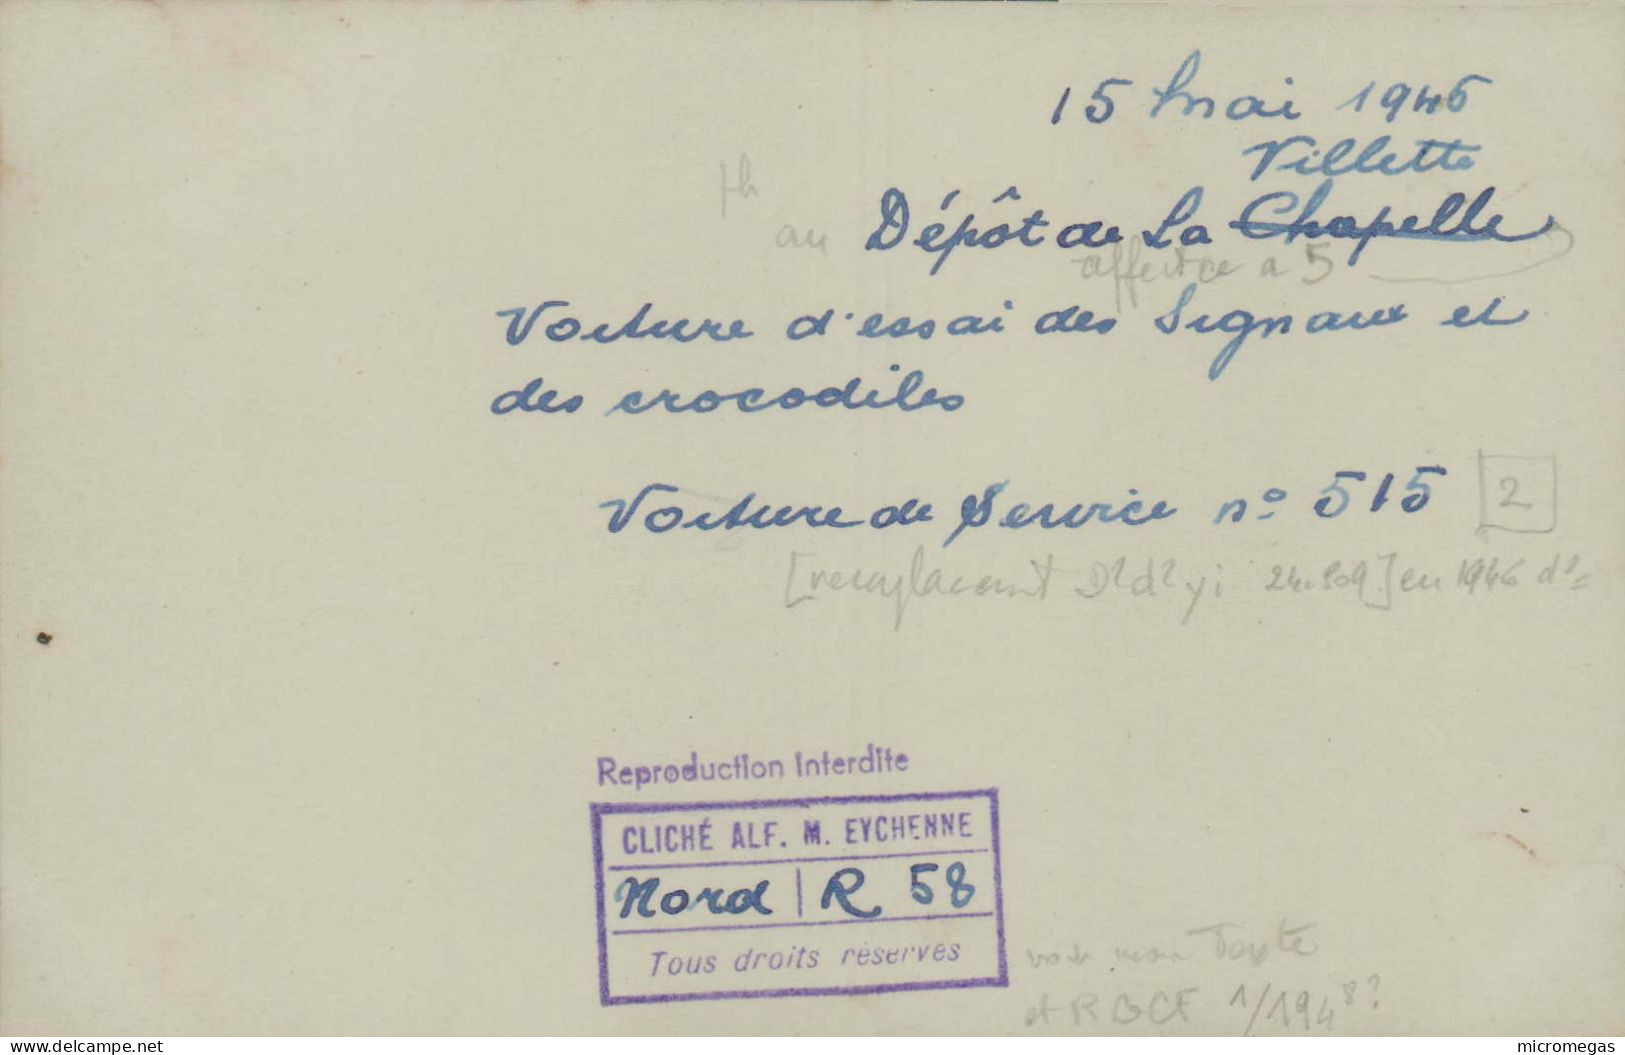 15 Mai 1946, Villette - Dépôt De La Chapelle - Voiture D'essai Des Signaux Et Des Crocodiles  - Cliché Alf. M. Eychenne - Treni